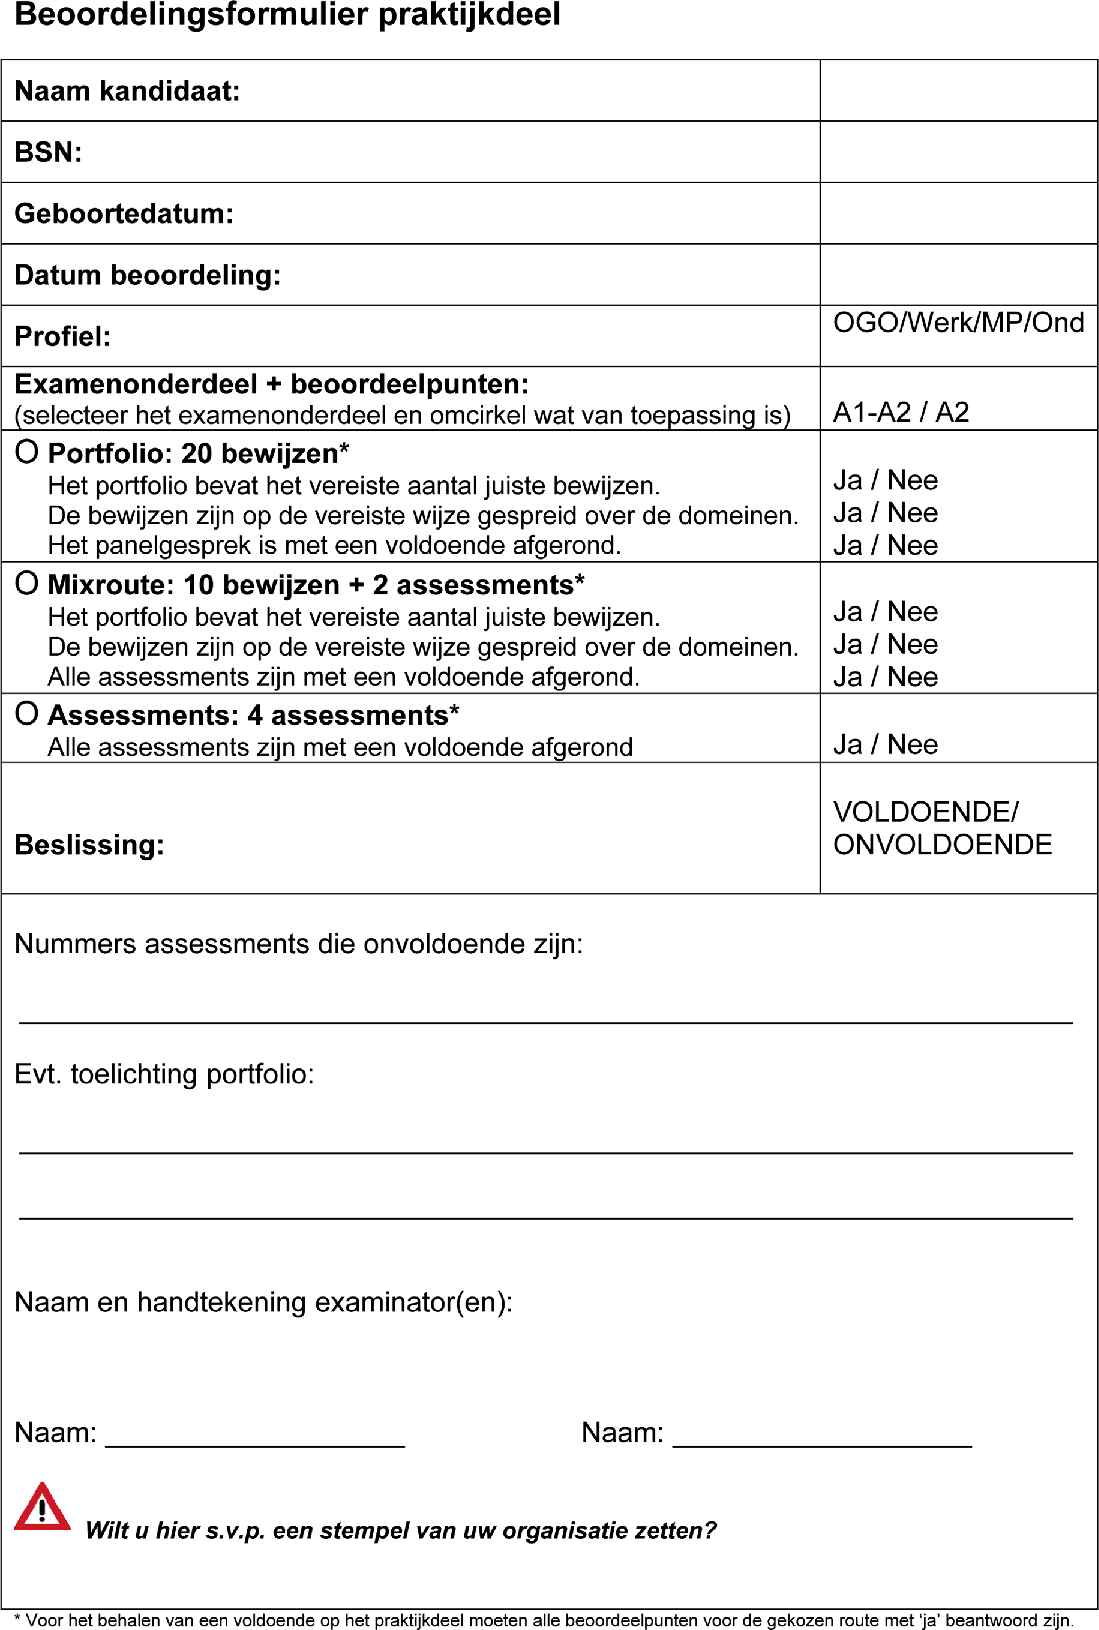 wetten.nl - Regeling - Regeling inburgering - BWBR0020657